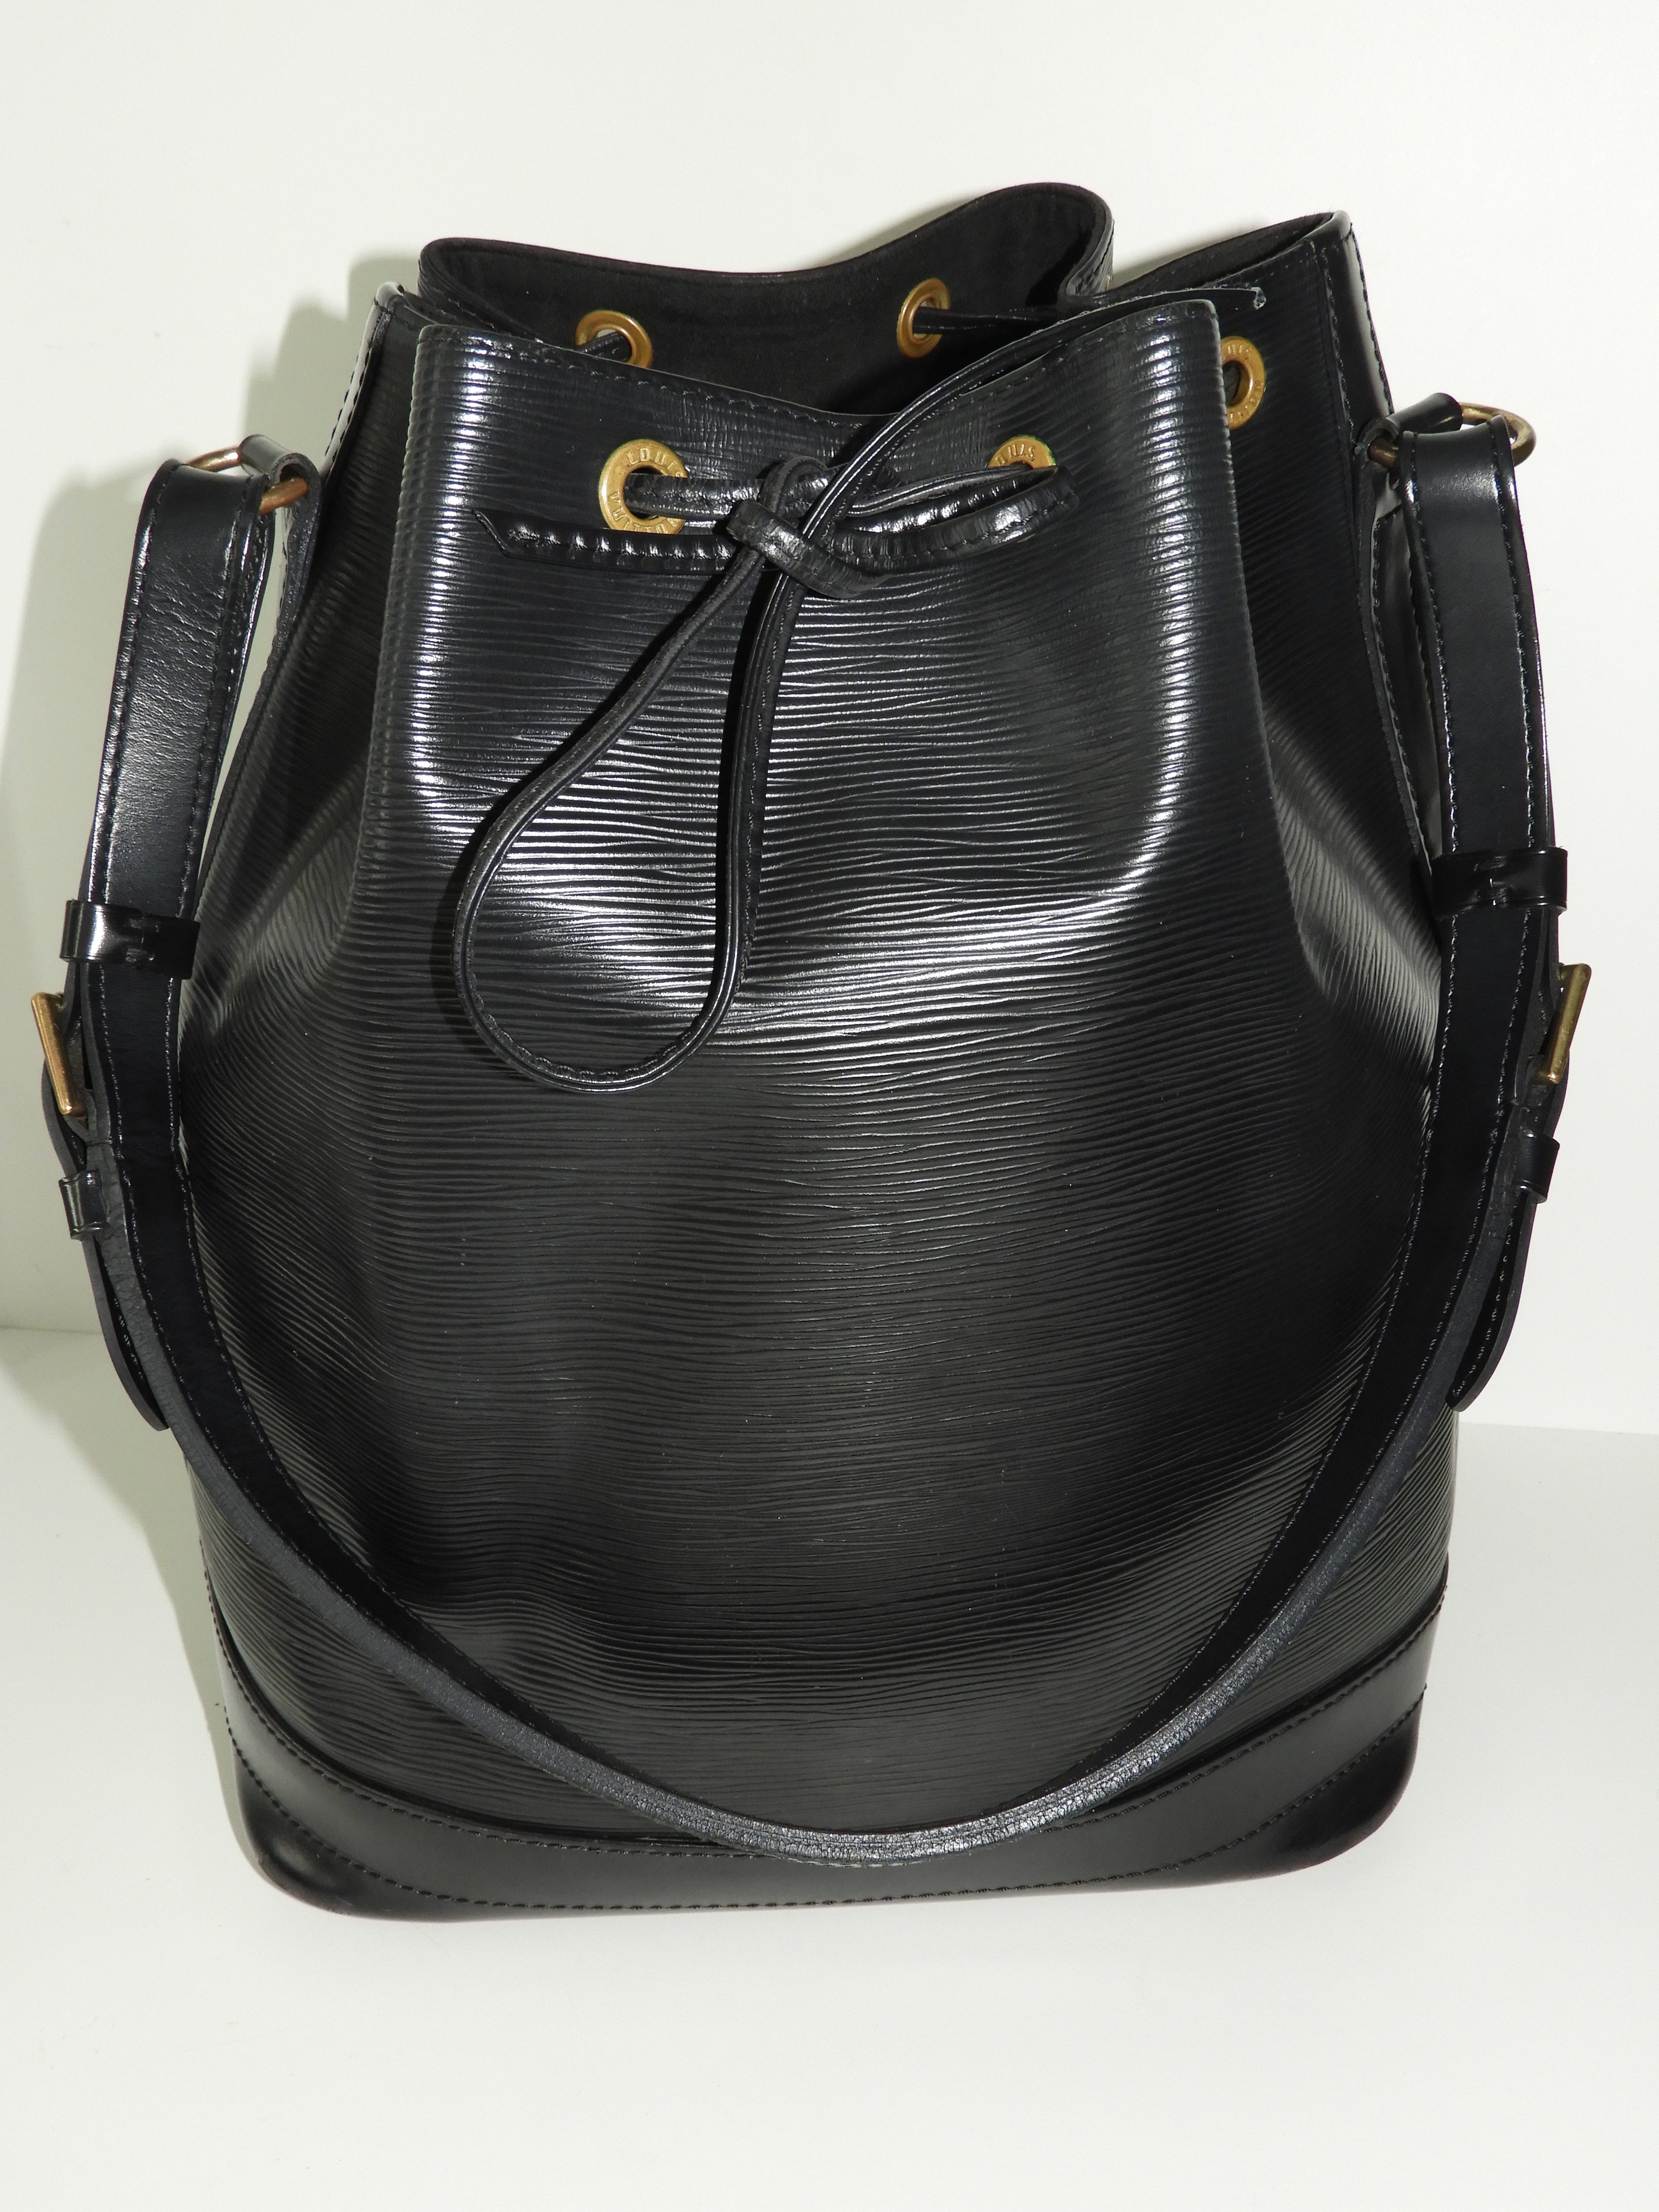 Louis Vuitton Taschen aus Leder - Schwarz - 37284226